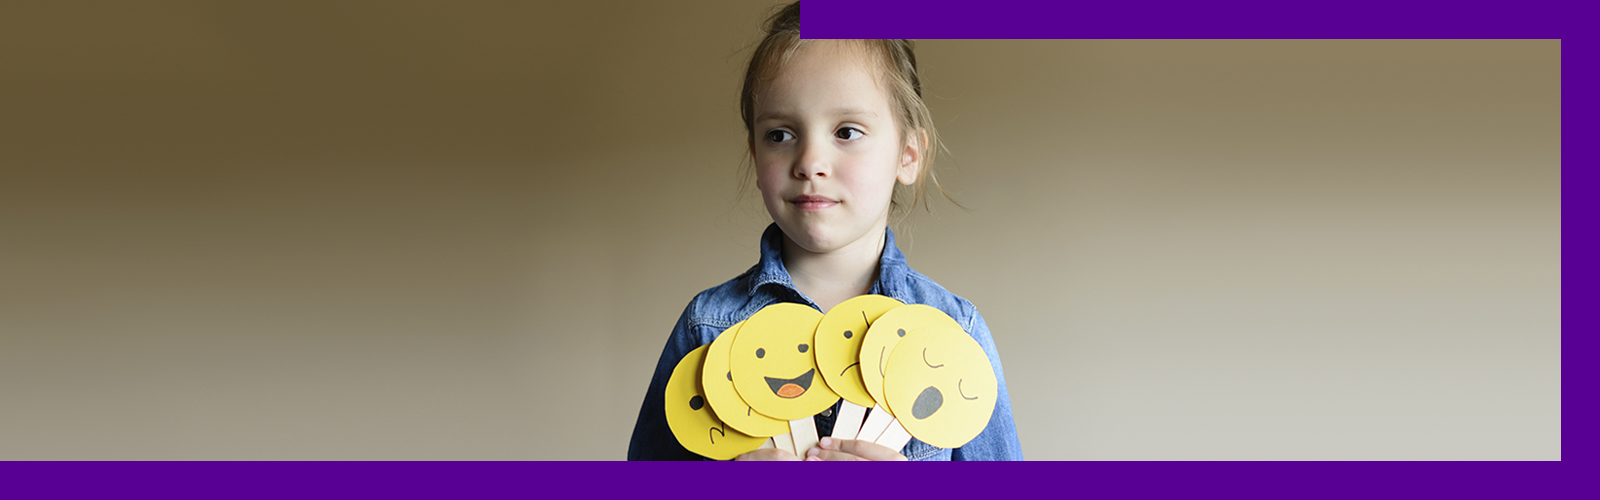 Em imagem que ilustra como ajudar as crianças a se expressarem, uma menina segura diversas placas que lembram emojis de expressões faciais, indicando sono, alegria, tristeza, entre outros. Ela está olhando para a frente com um sorriso discreto.